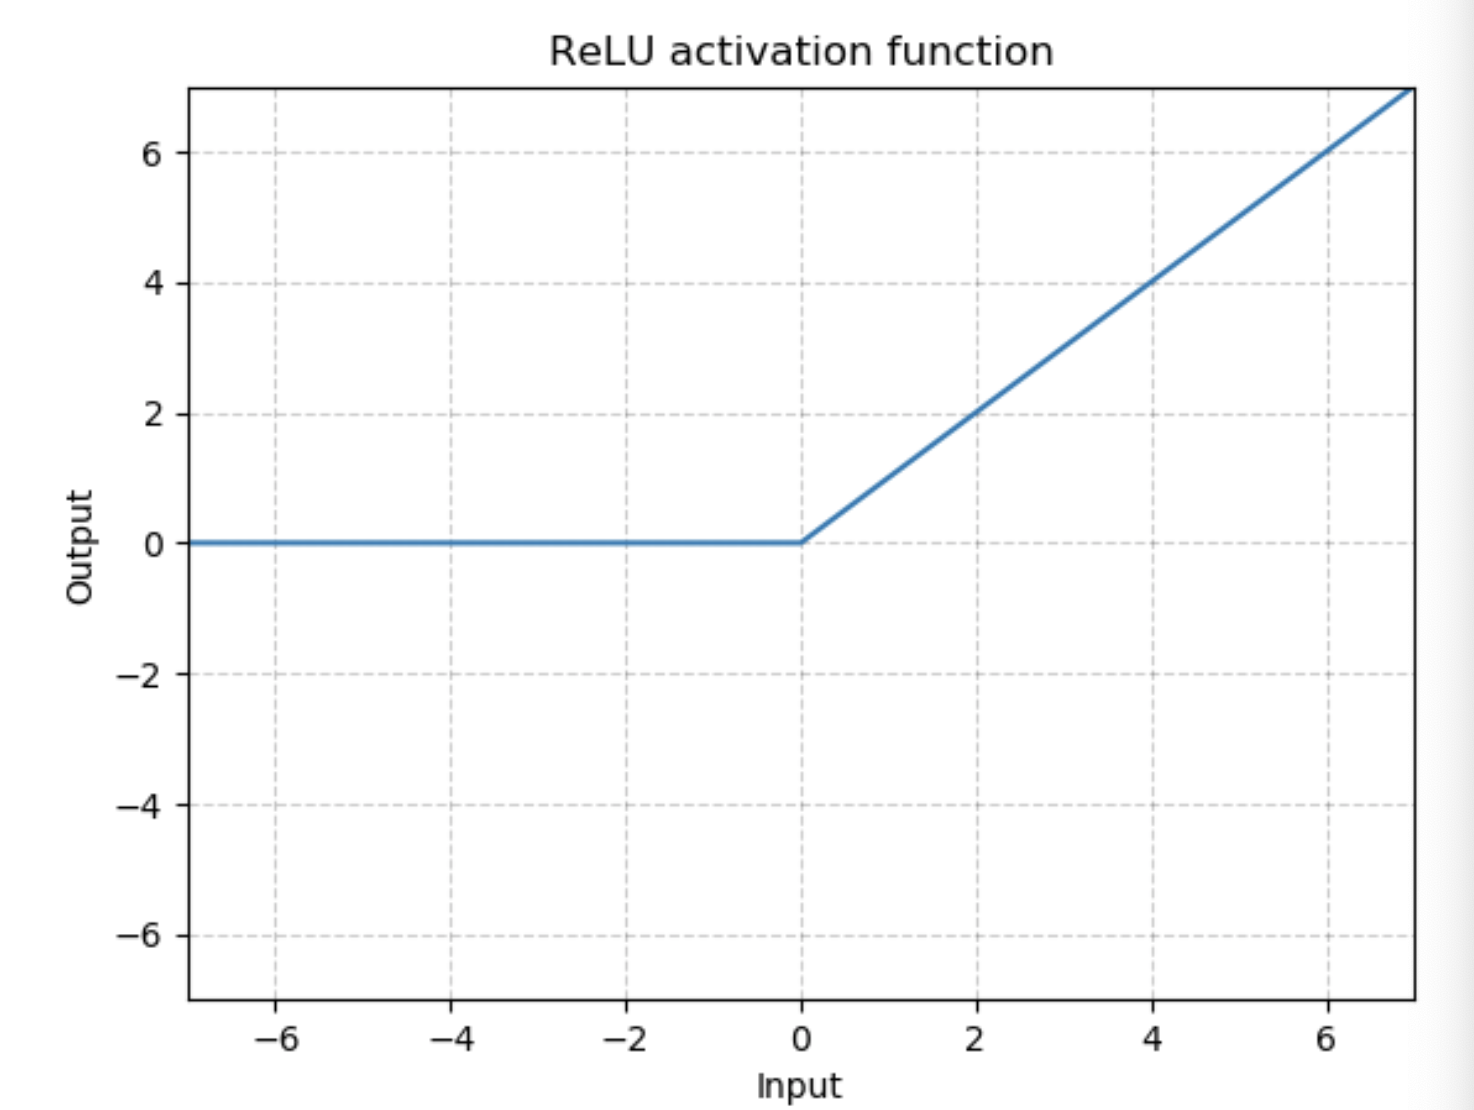 Relu функция активации